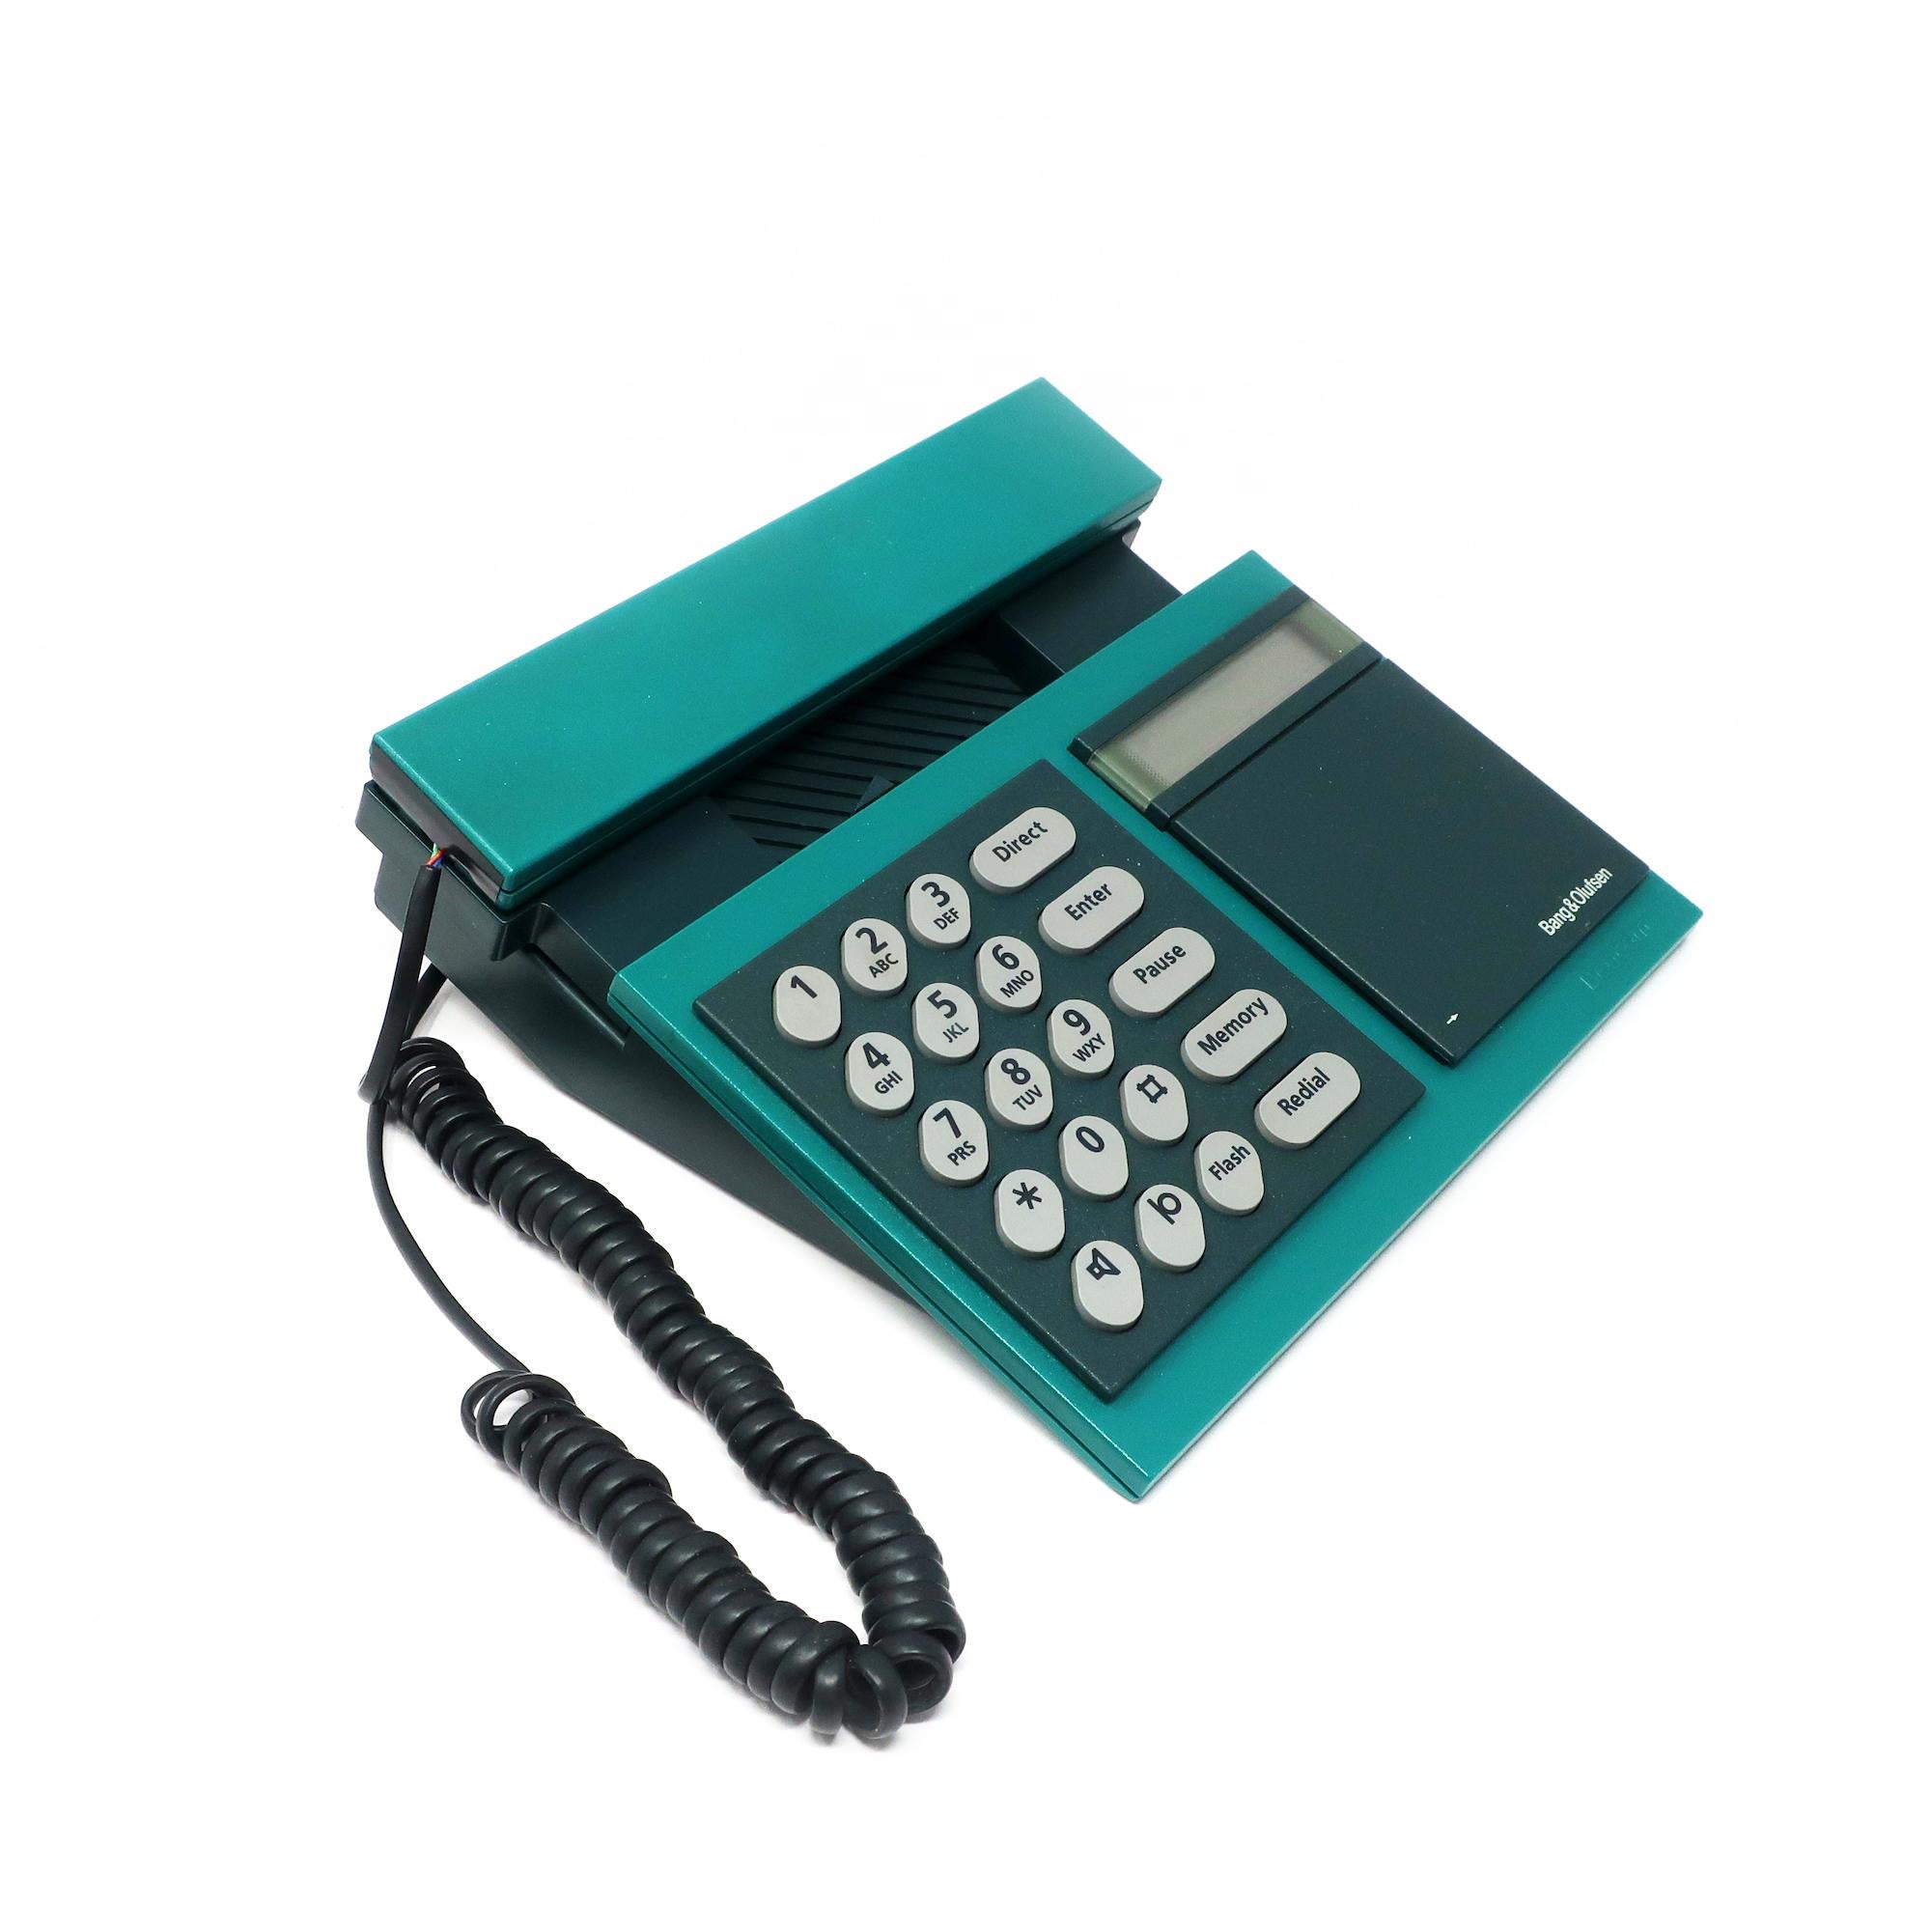 Postmoderne téléphone Beocom 2000 Bang & Olufsen des années 1980 en vente